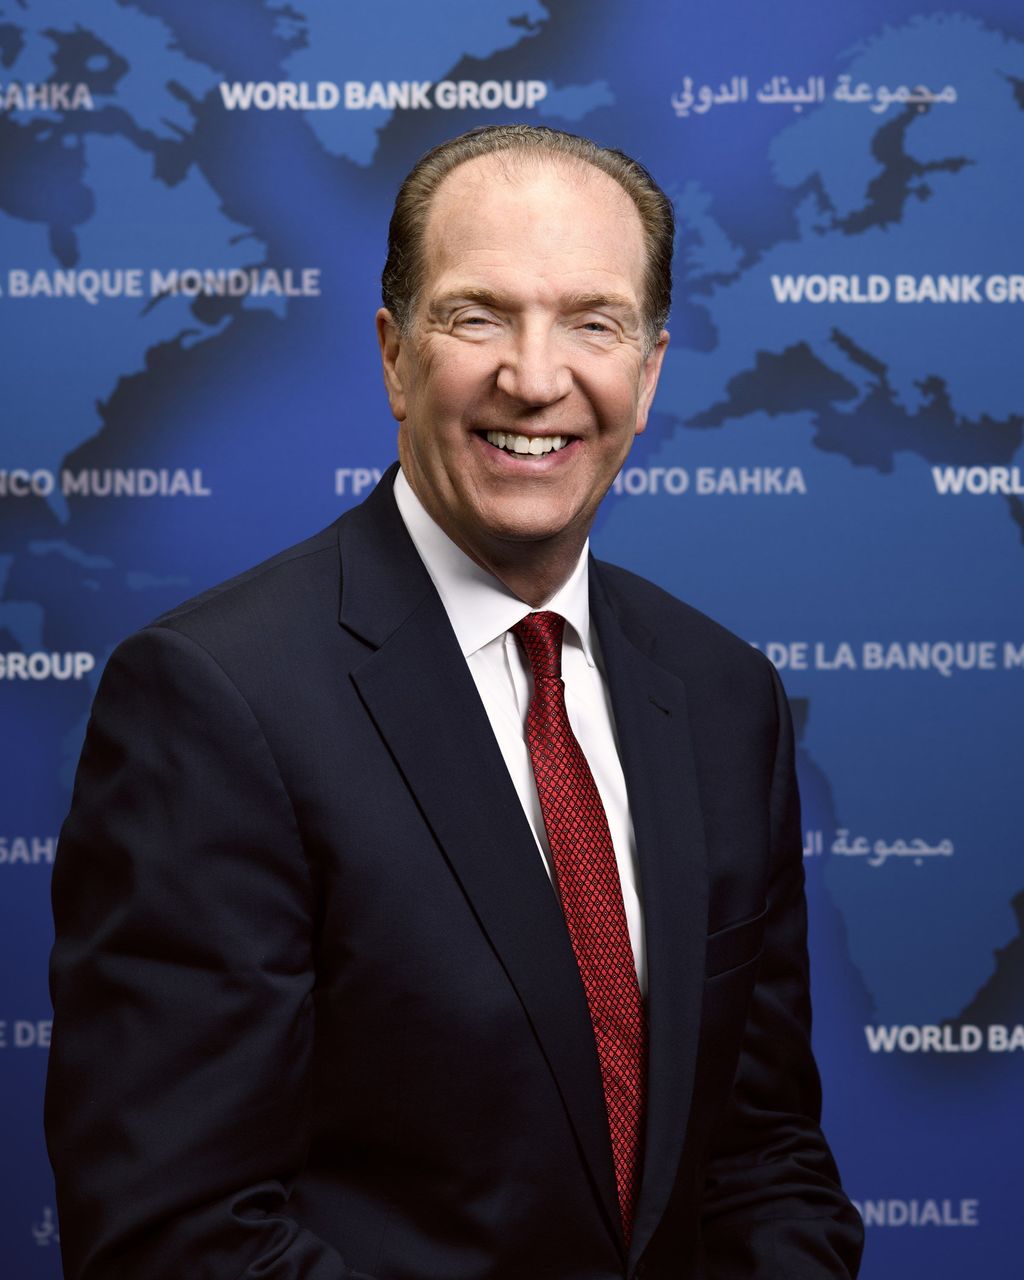 El estadounidense David Malpass es un férreo crítico de los organsimos internacionales. El anuncio se produce una semana antes de celebrar los 75 años de la creación del Banco Mundial.